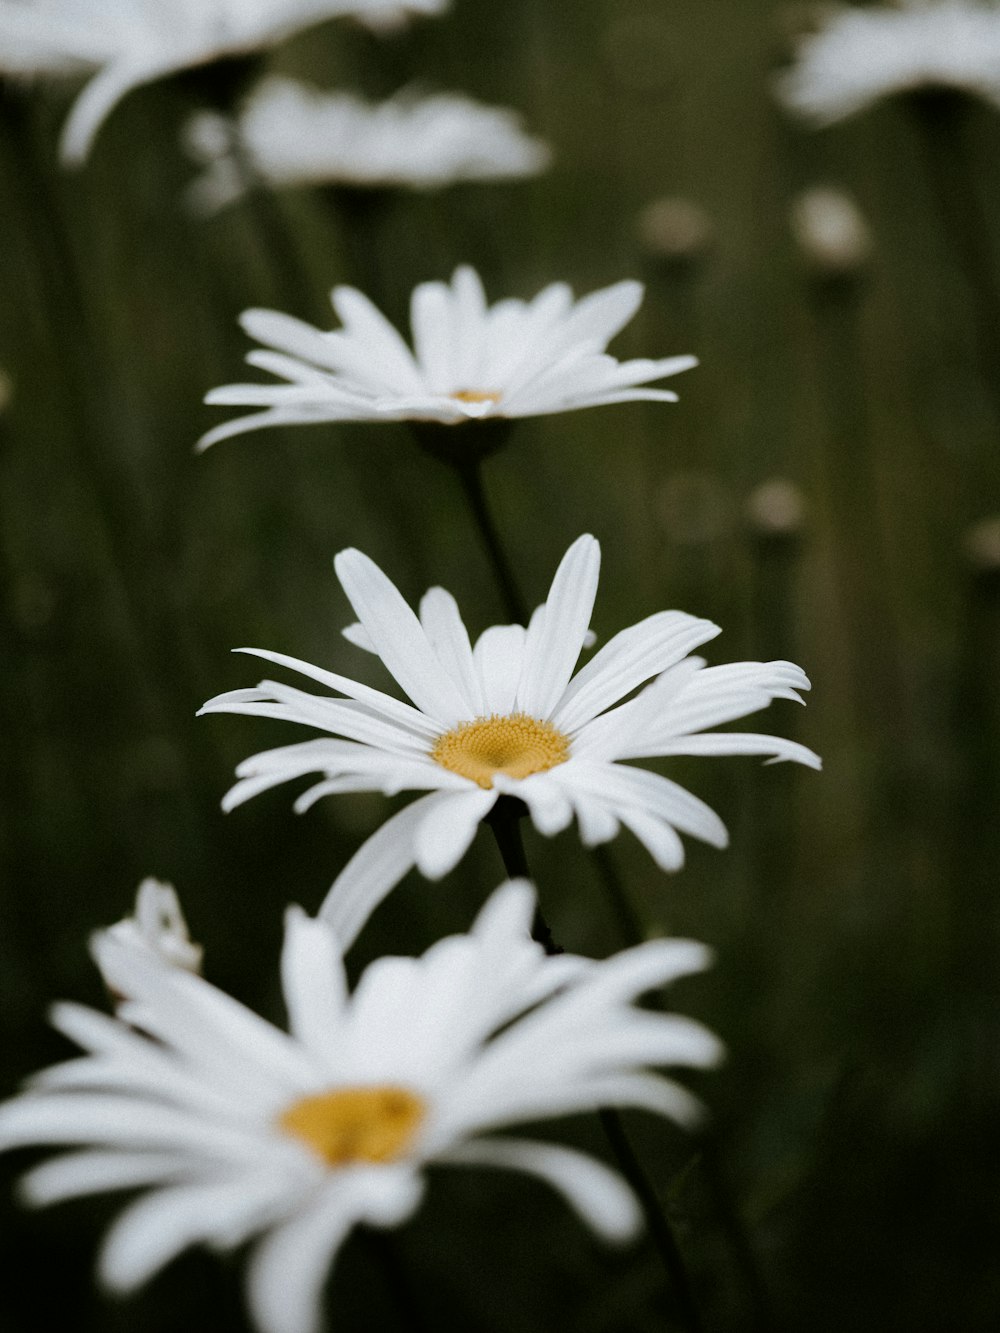 white daisy flowers in tilt shift lens